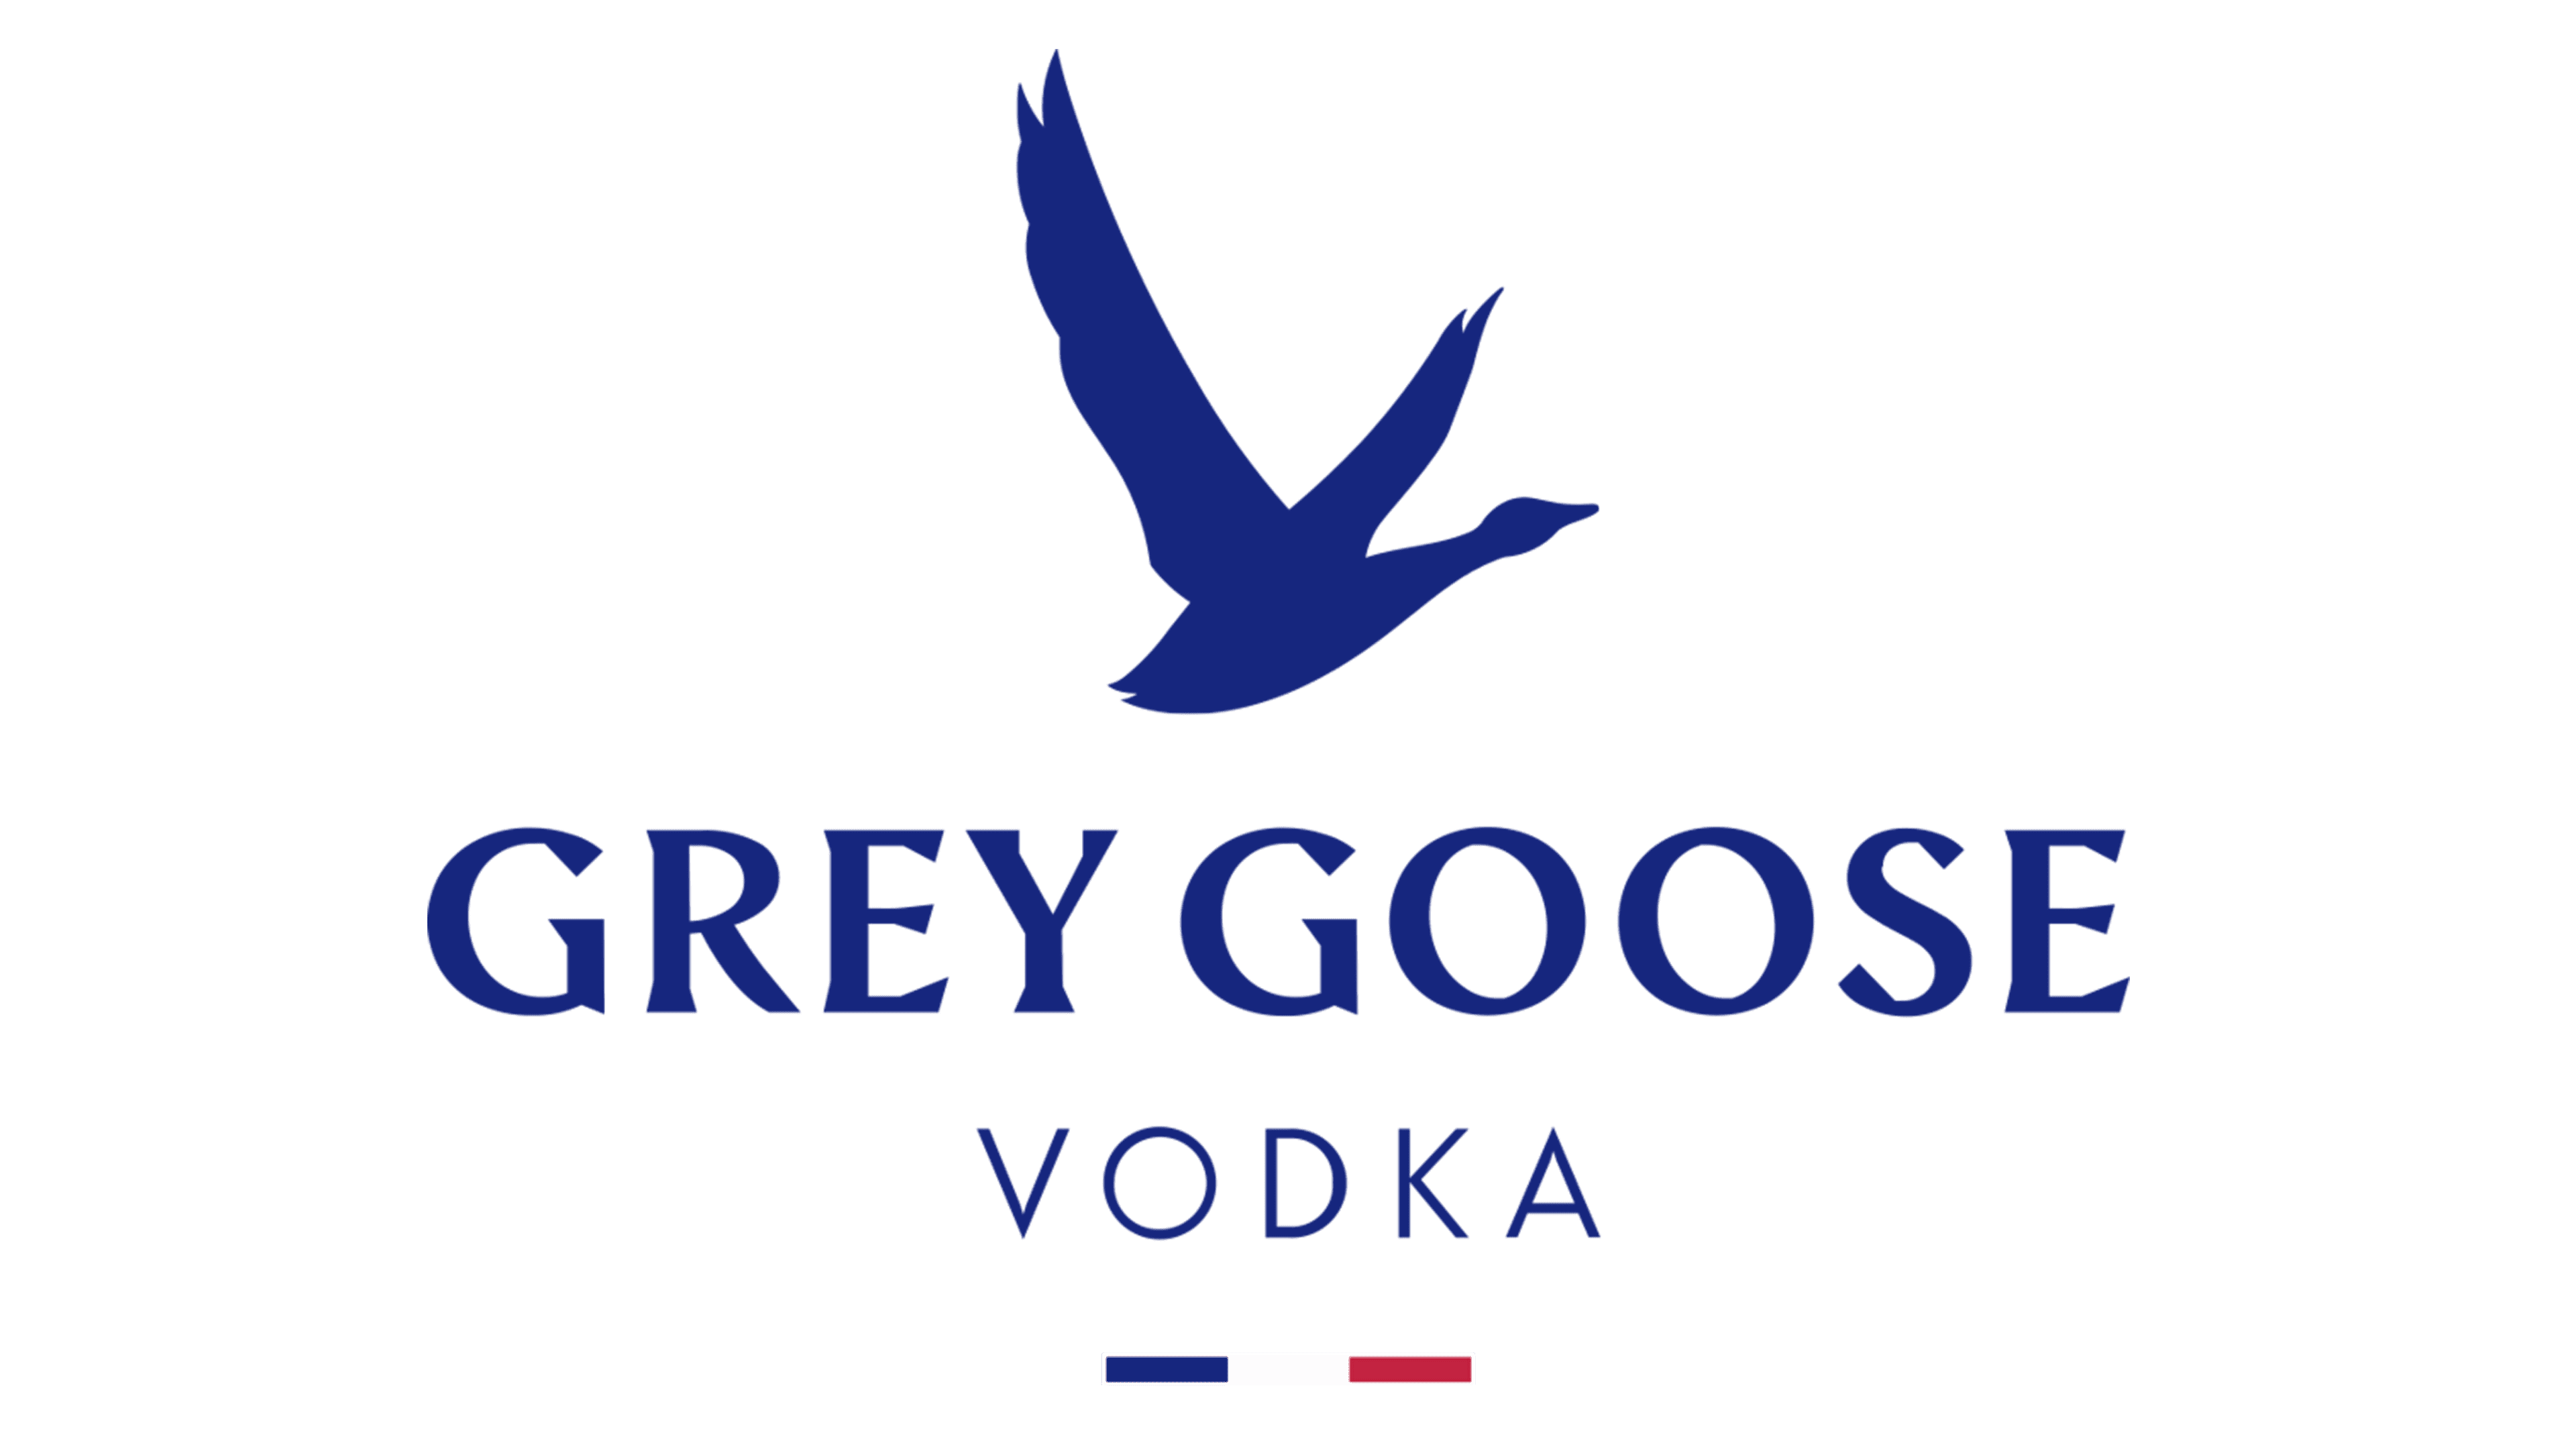 grey goose bottle label